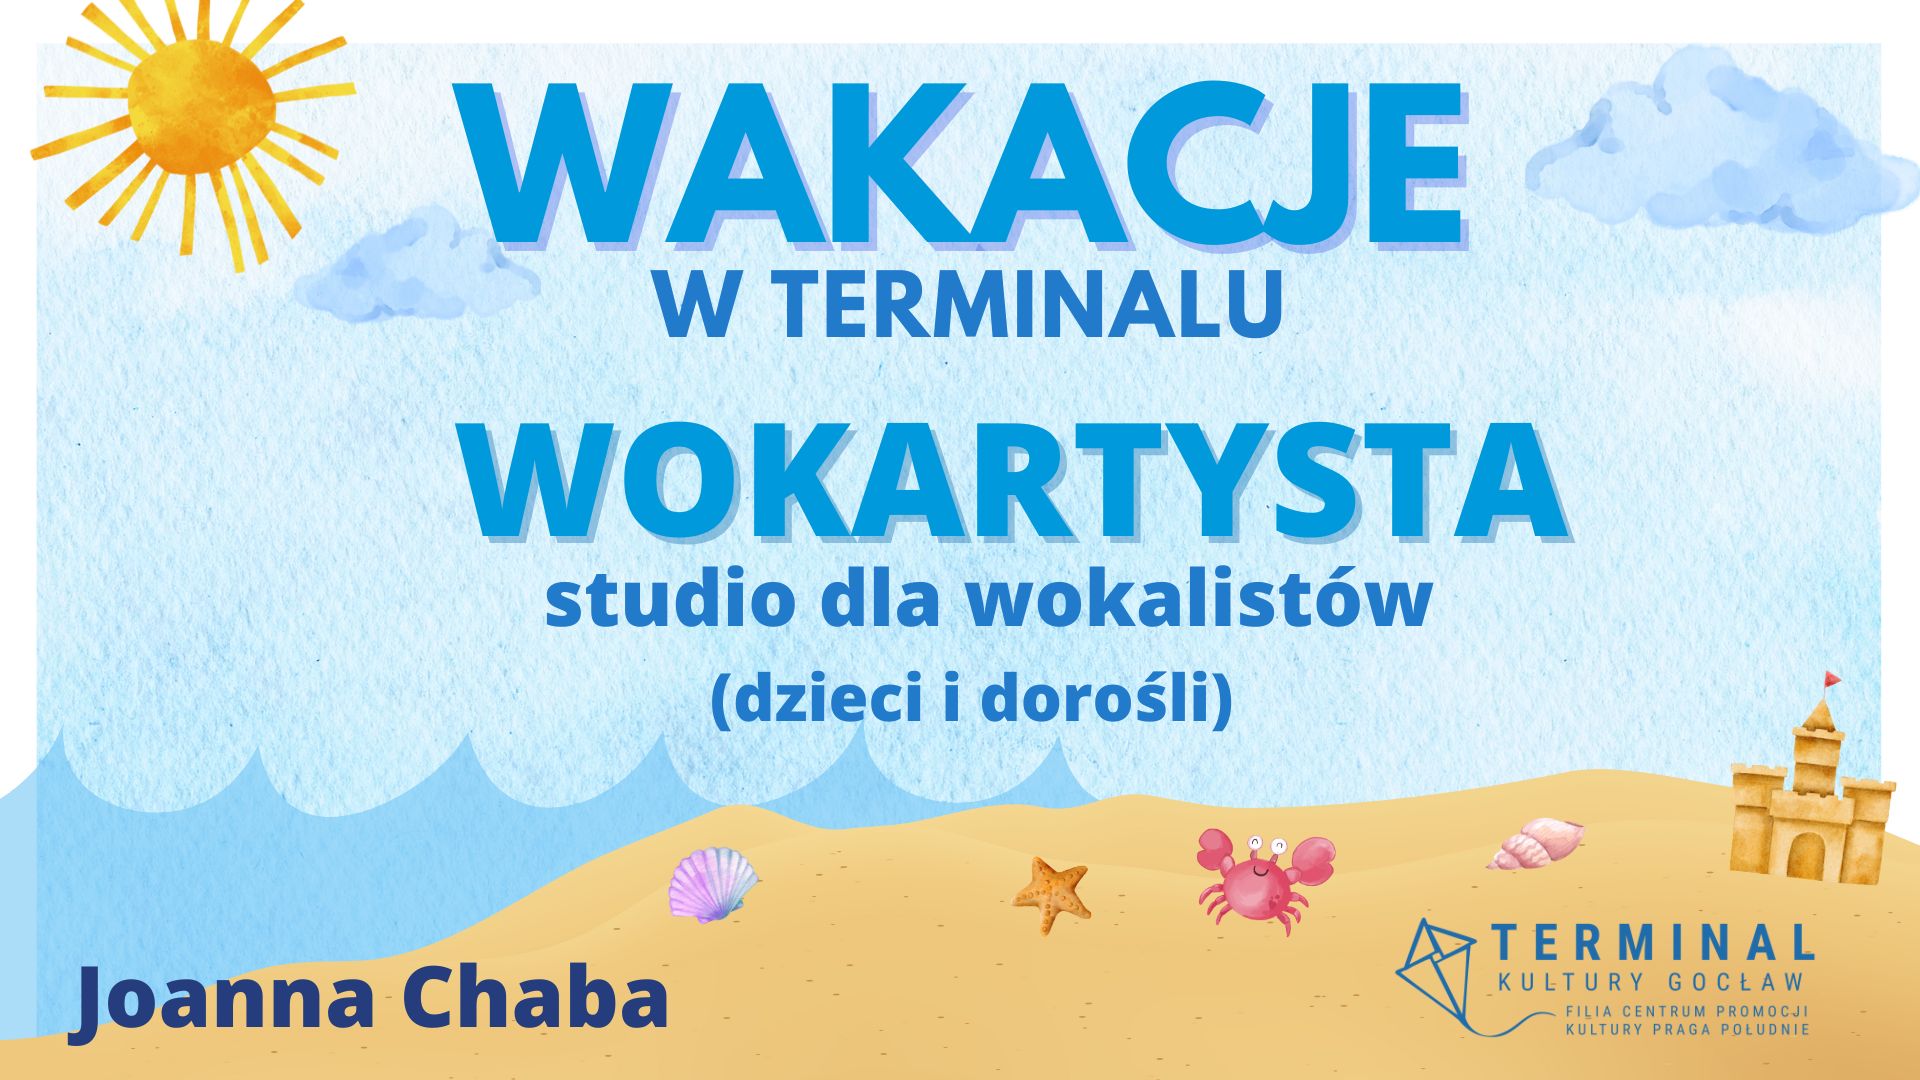 WAKACJE - WOKARTYSTA - STUDIO DLA WOKALISTÓW Joanna Chaba